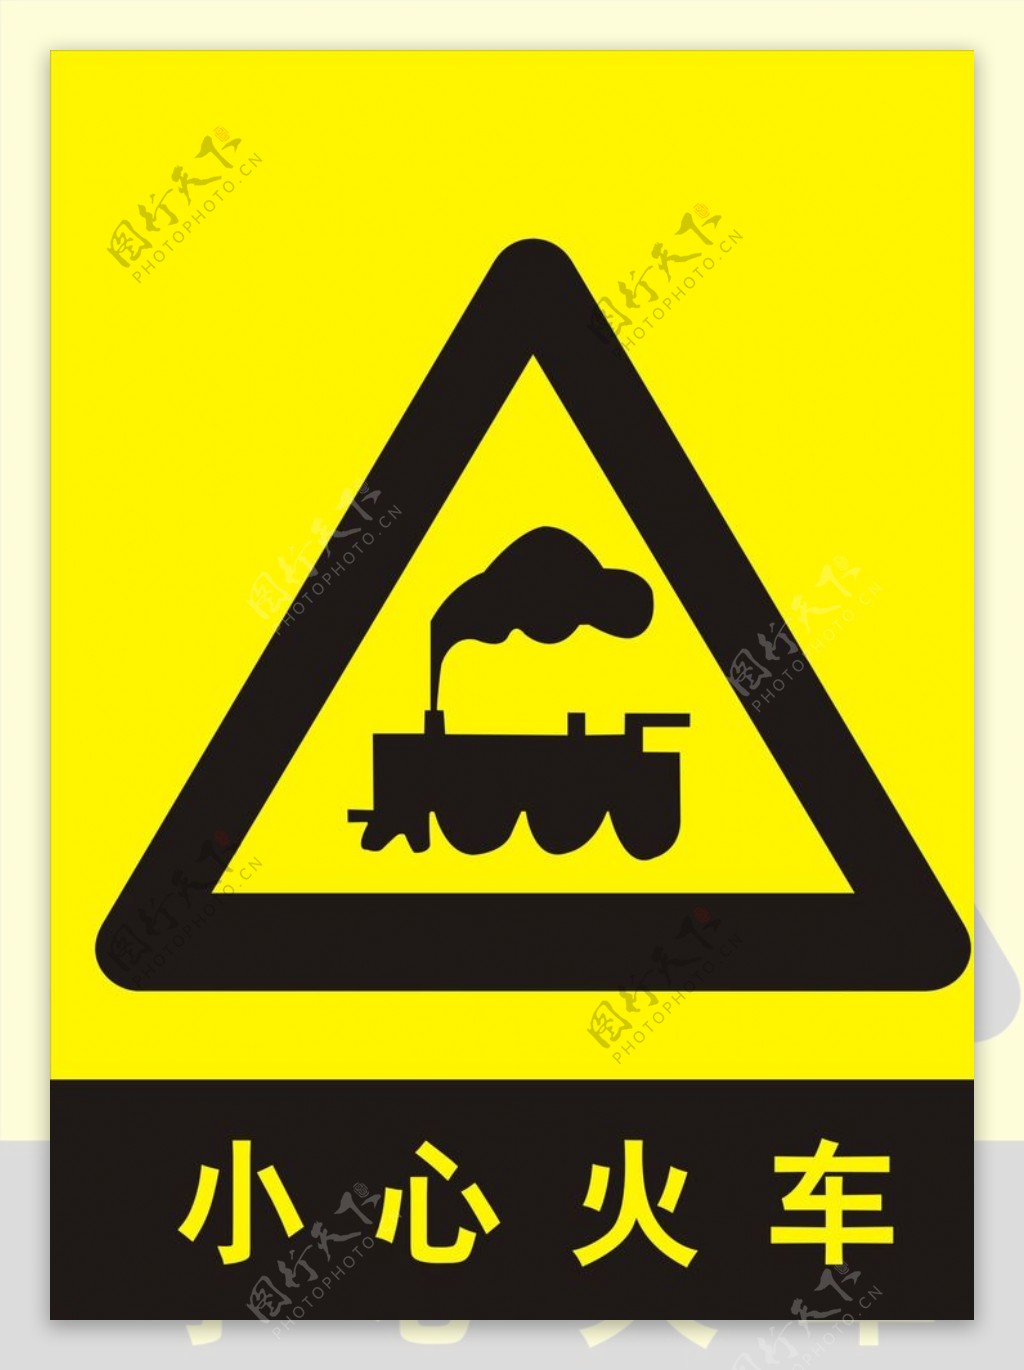 小心火车安全提示牌图片